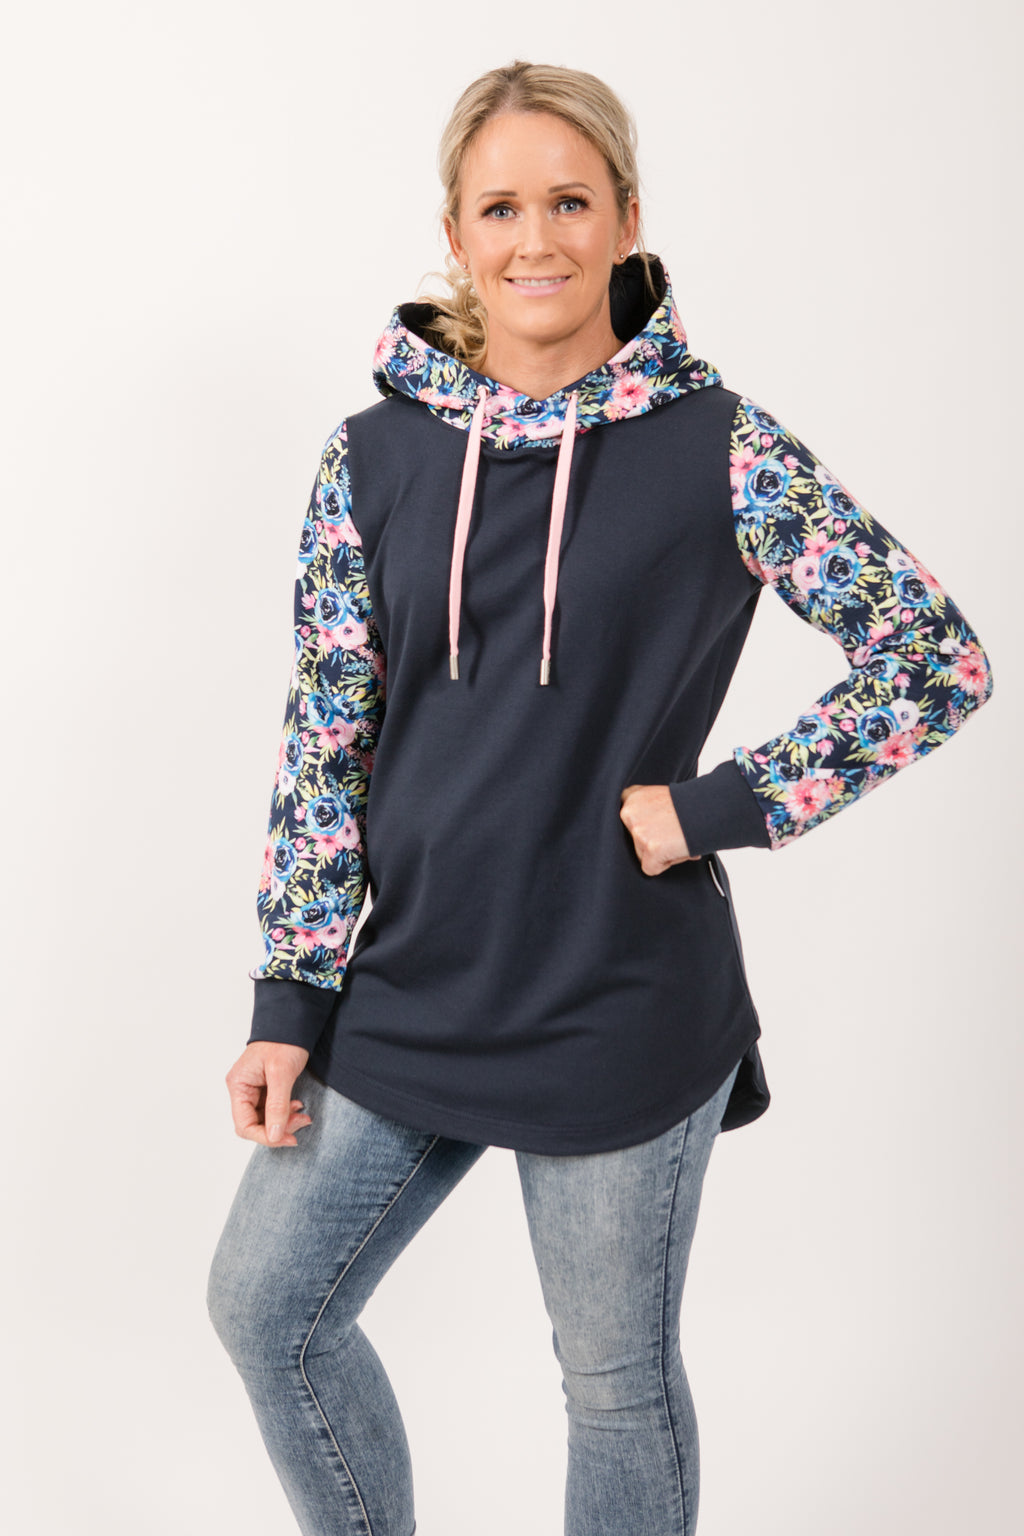 Weekender hoodie - grey/floral – Hazel May NZ